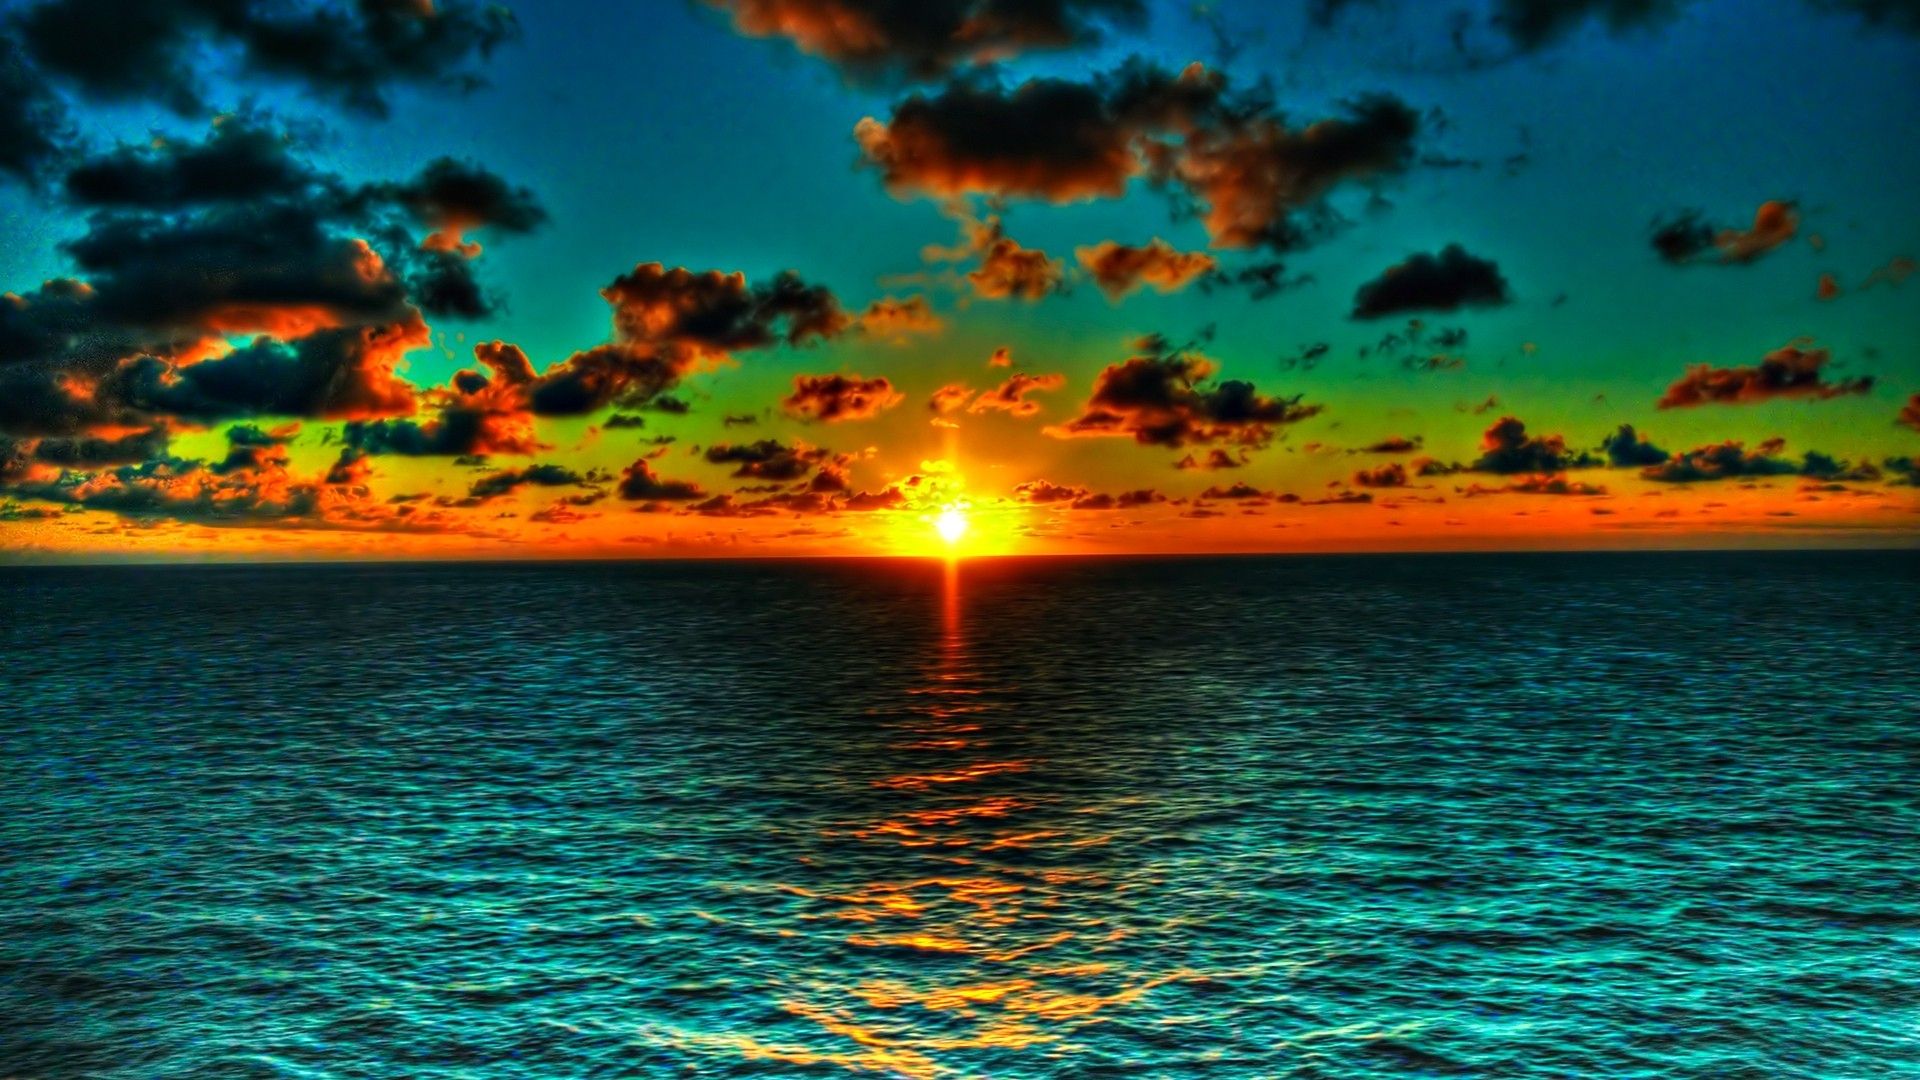 34+] Beautiful Ocean Sunset Wallpaper - WallpaperSafari